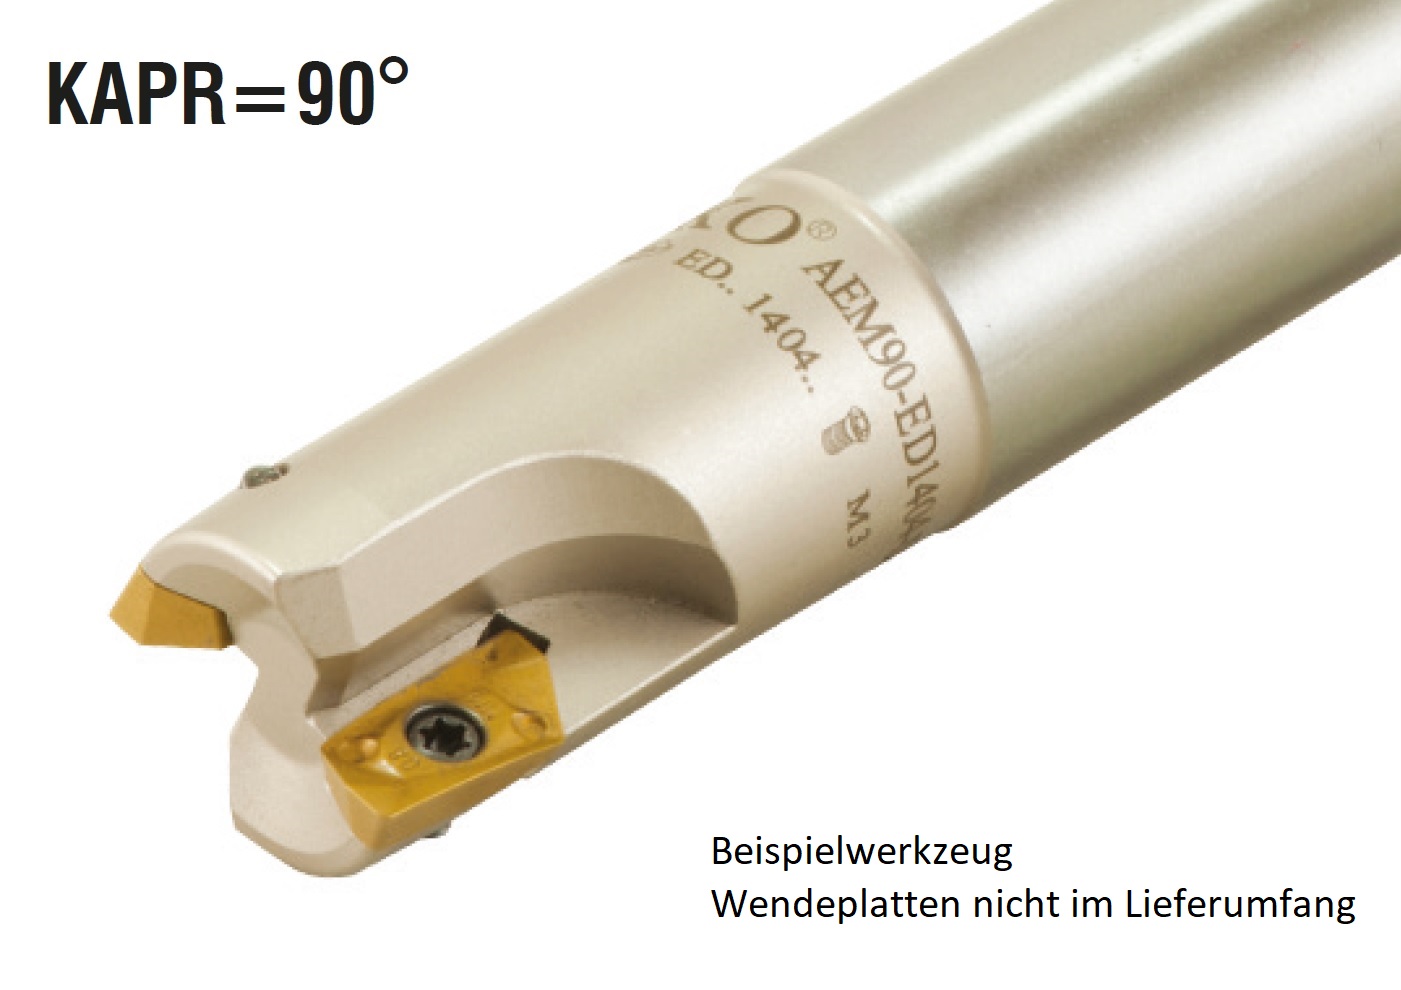 AKKO-Wendeplatten-Schaftfräser ø 16 mm, 90°, kompatibel mit Kennametal EDPT 10T3..
Schaft-ø 16, ohne Innenkühlung, Z=2